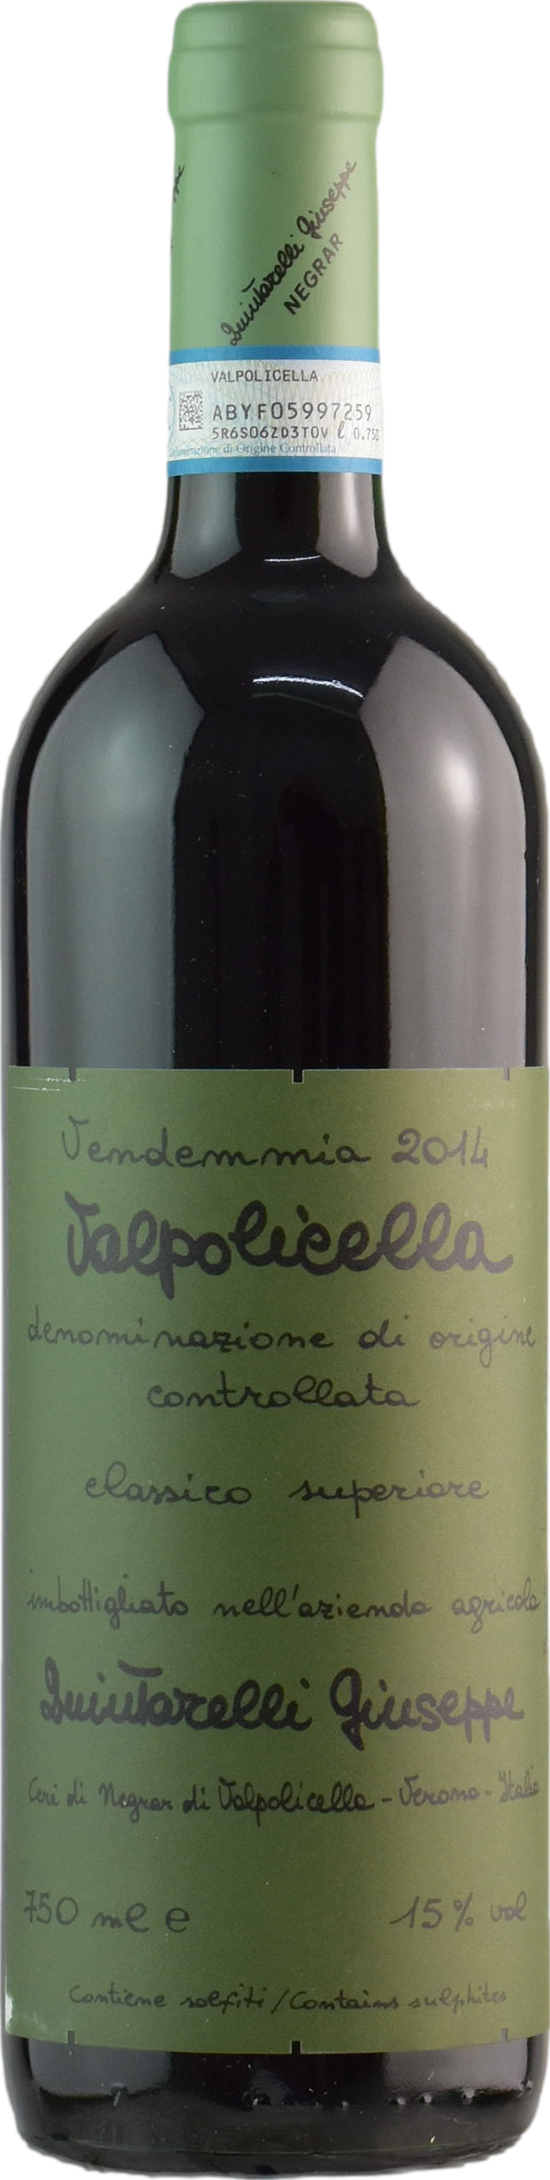 Quintarelli Valpolicella Classico Superiore 2014 Červené 15.0% 0.75 l